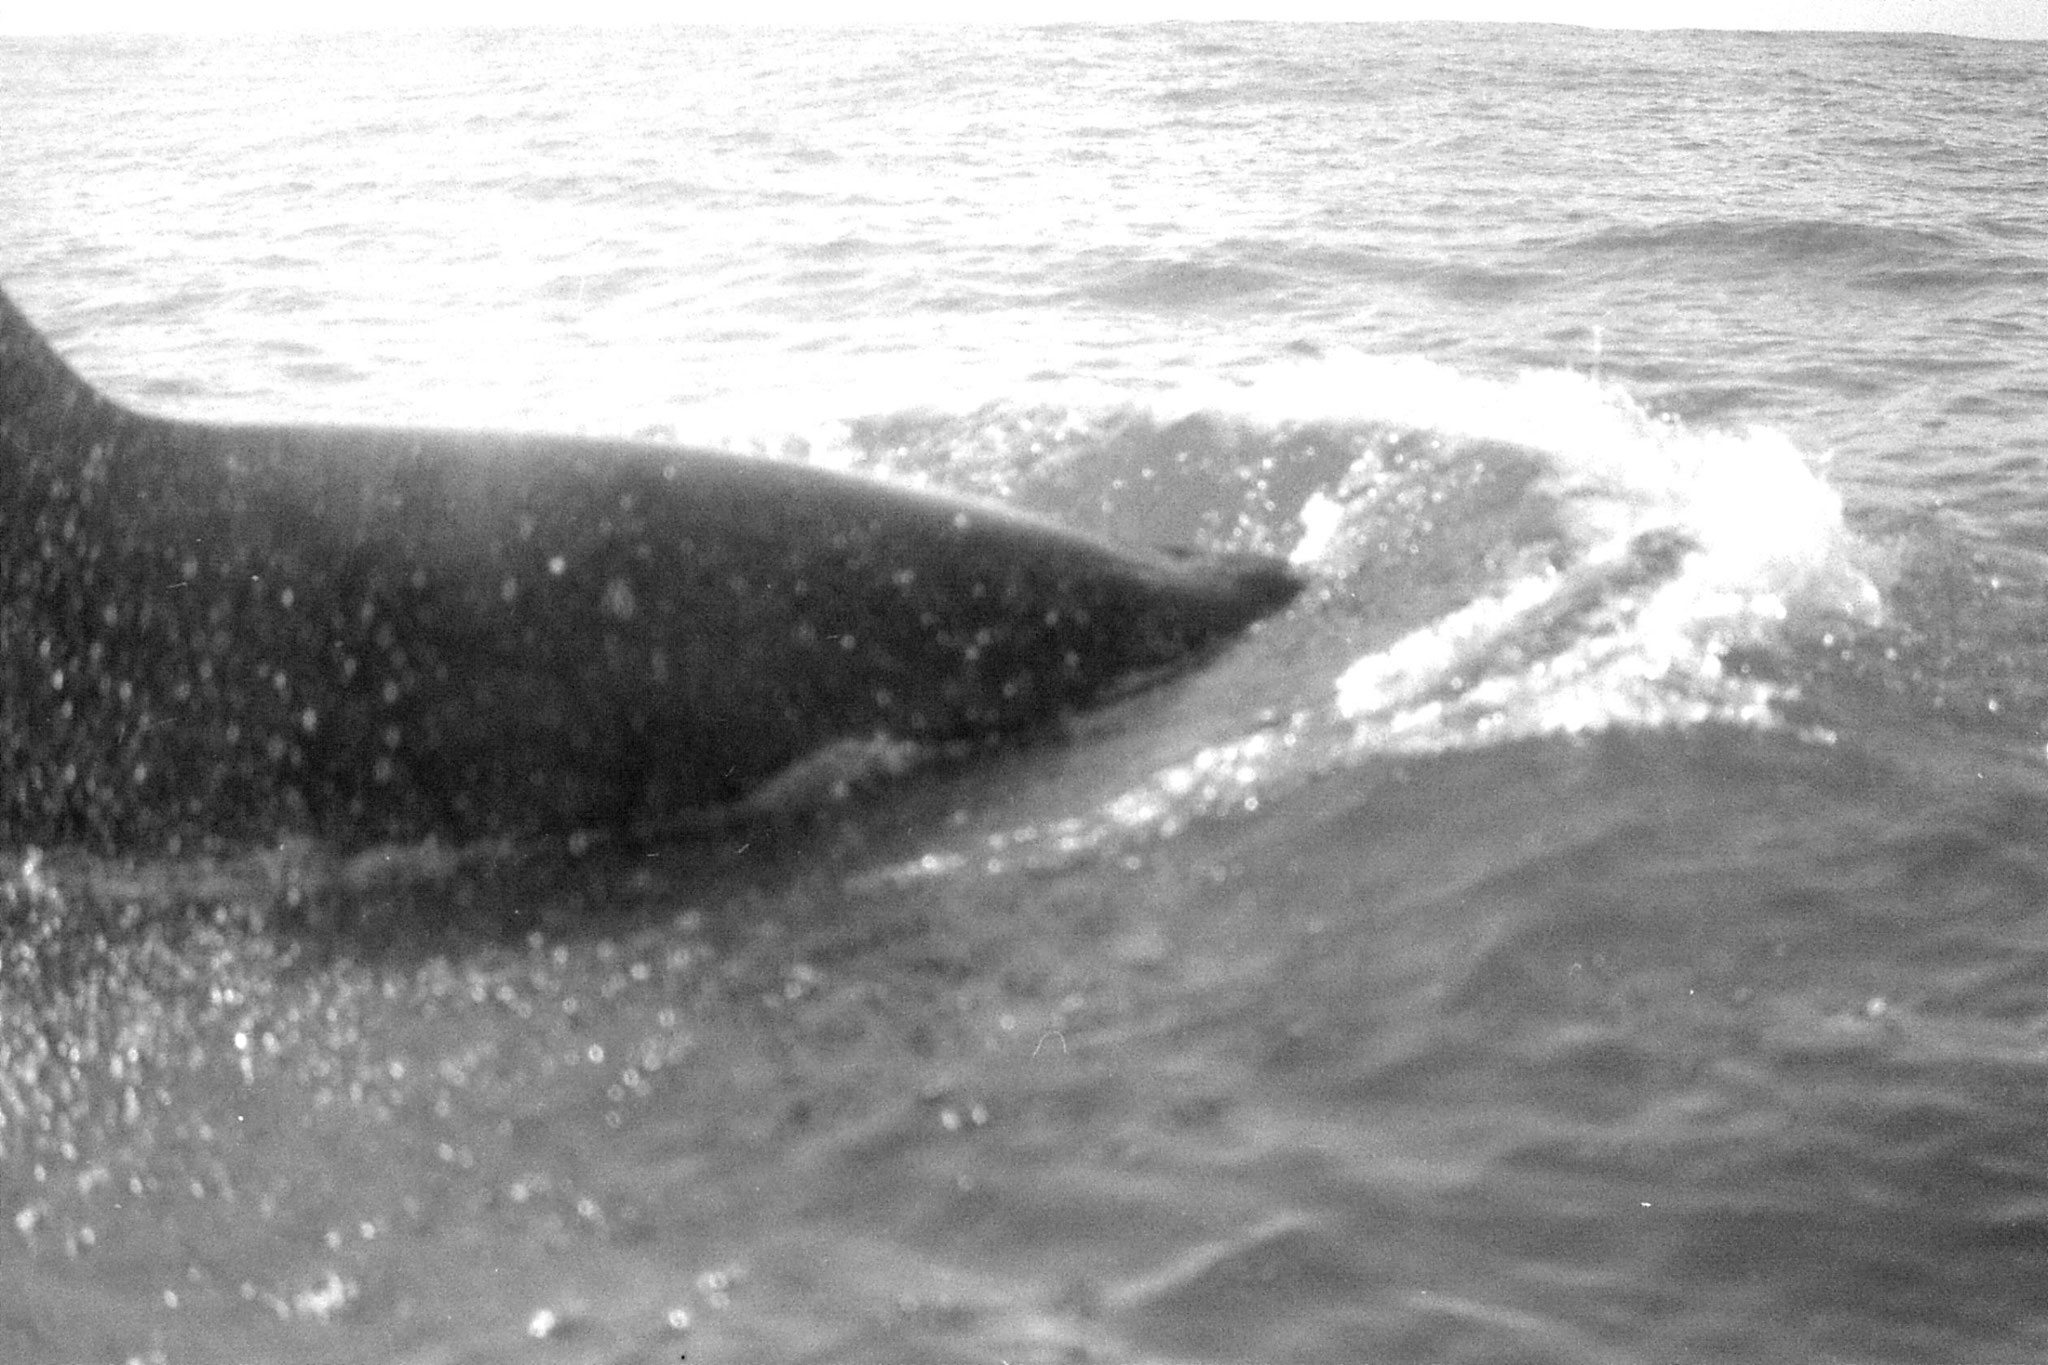 9/8/1990: 14:Kaikoura: killer whale